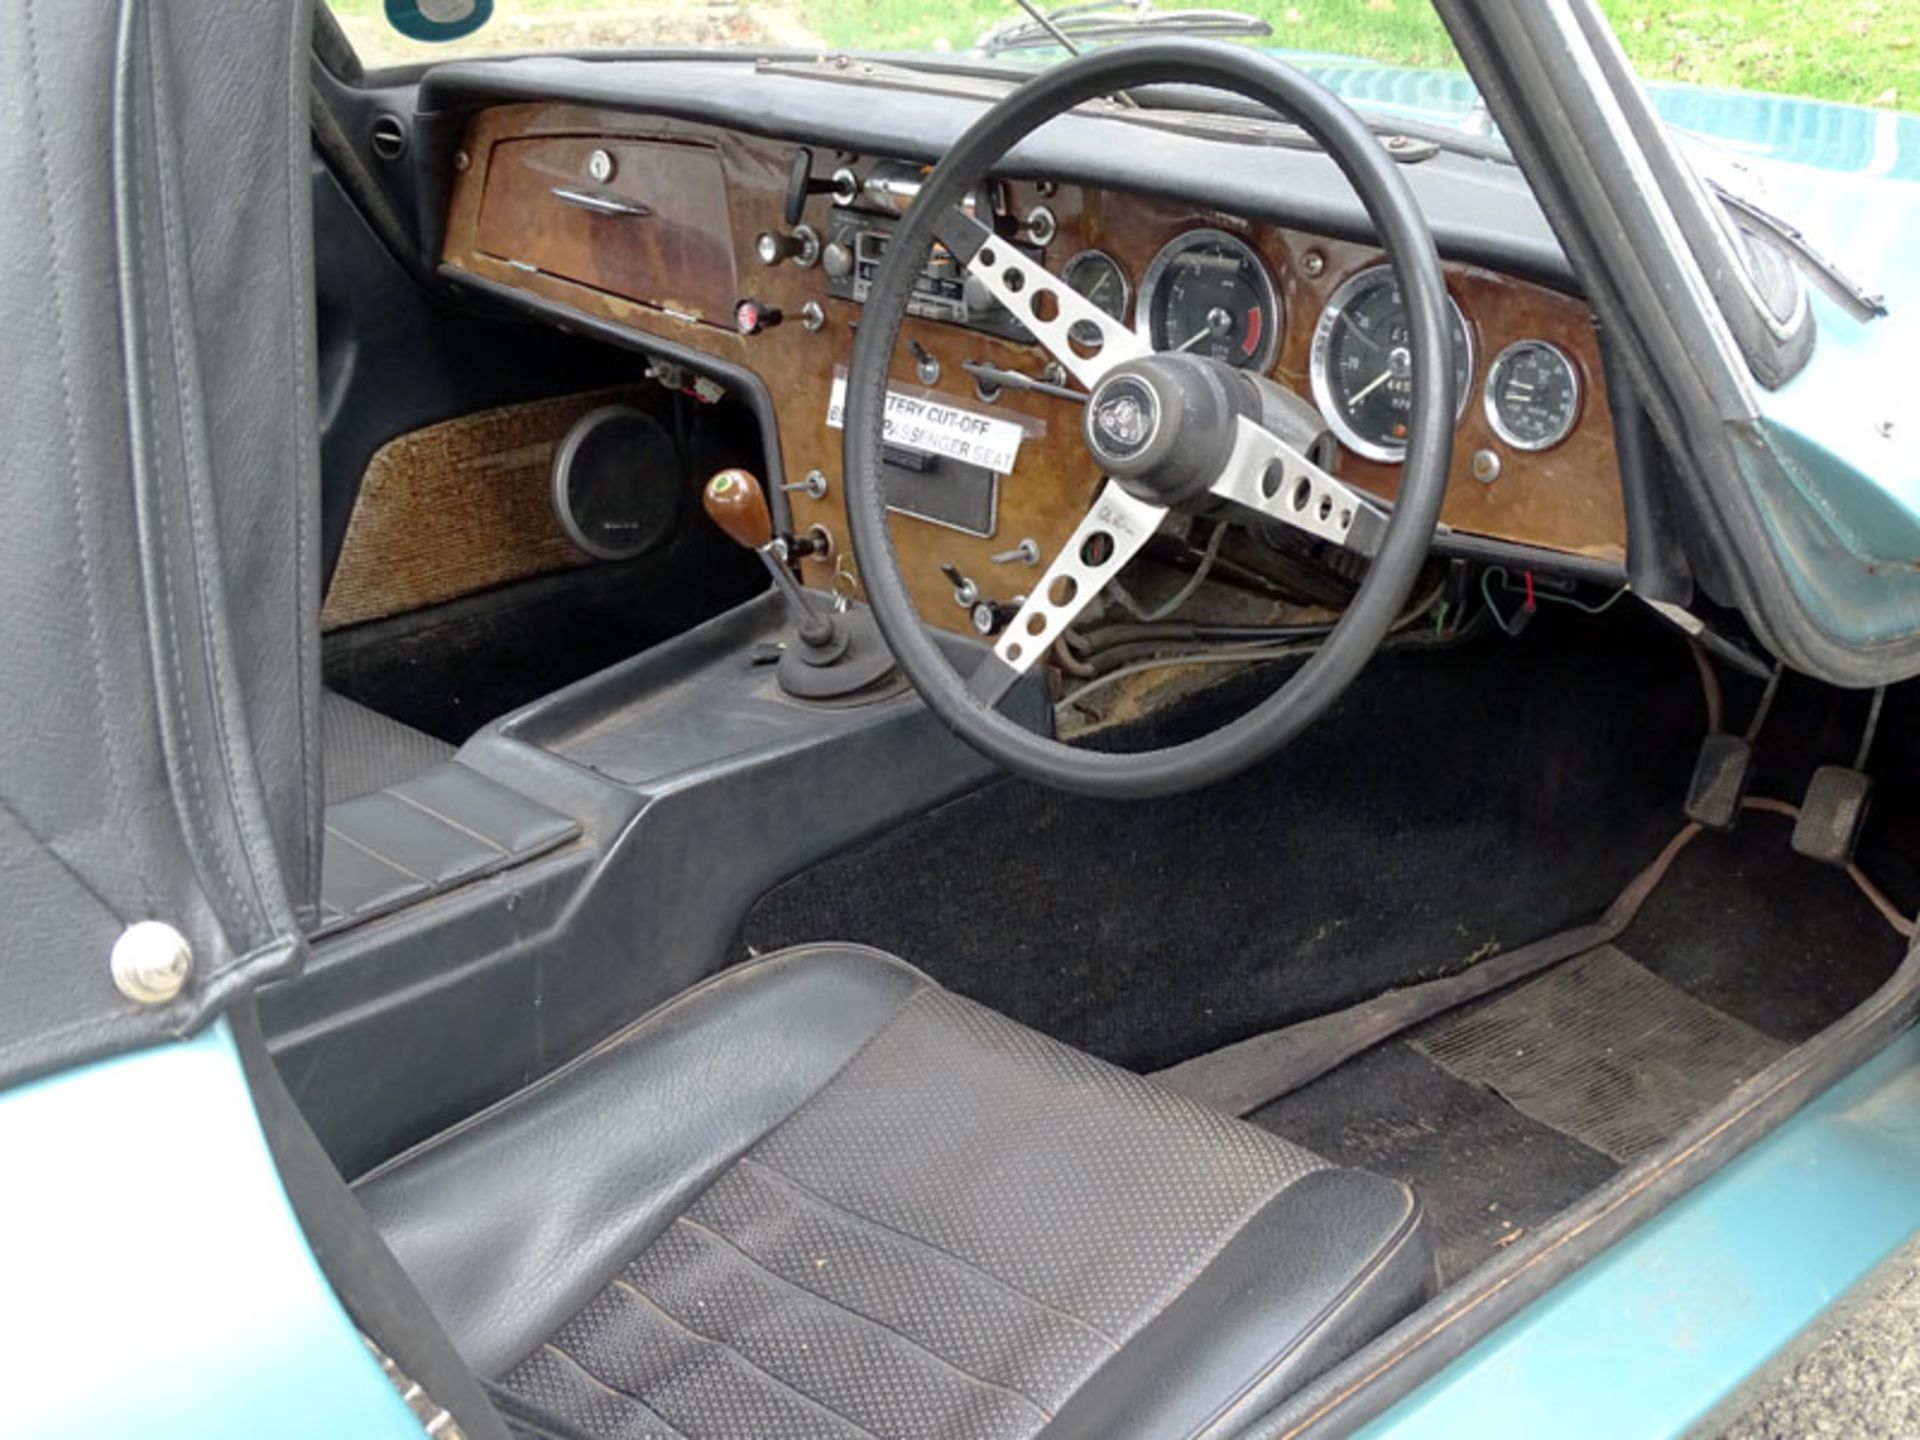 1968 Lotus Elan S3 Drophead Coupe - Image 3 of 5